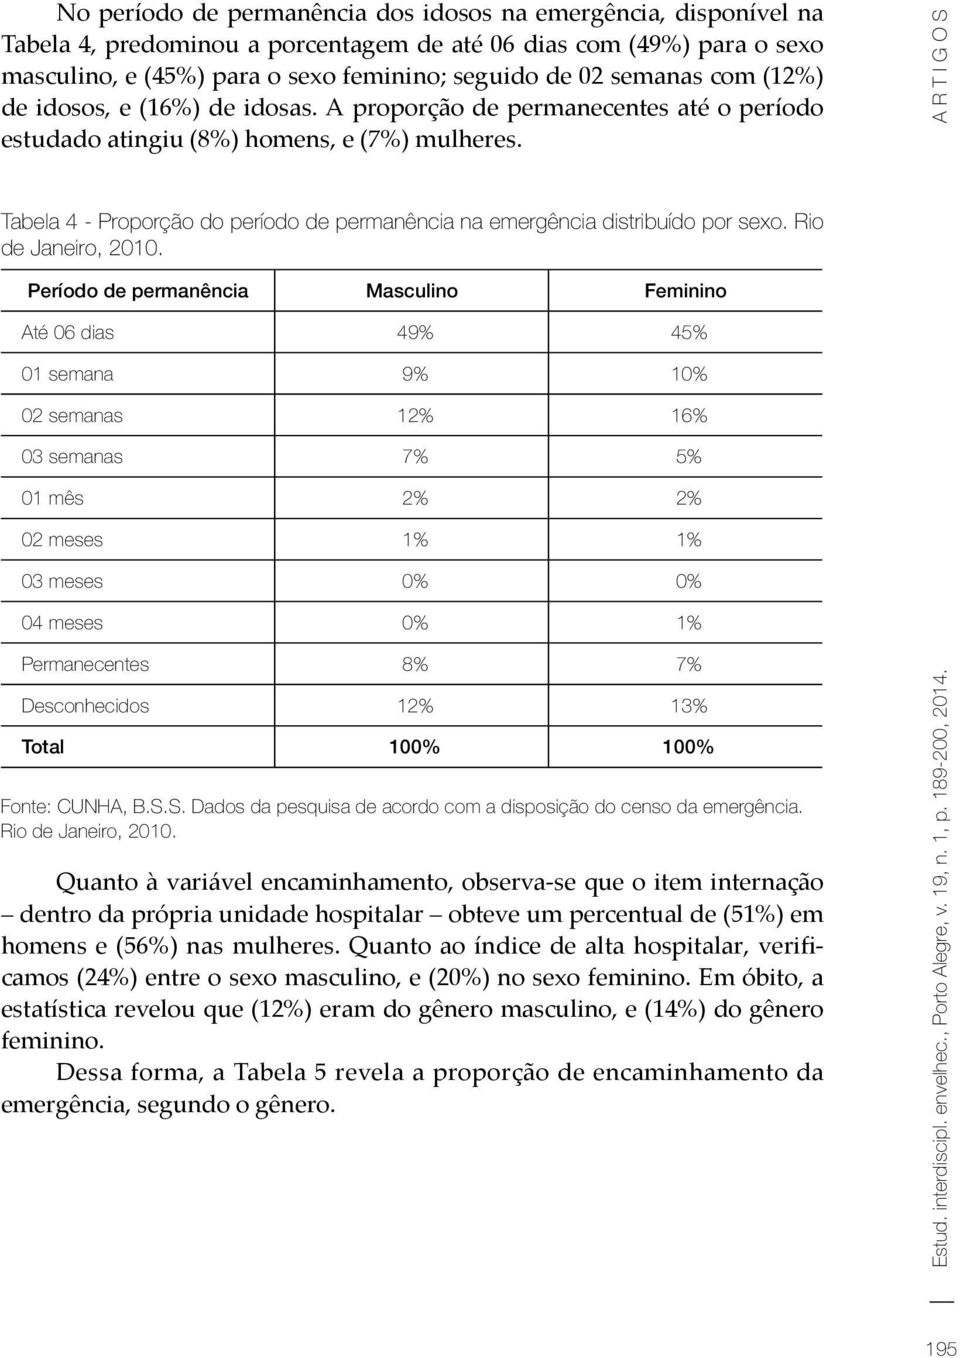 Tabela 4 - Proporção do período de permanência na emergência distribuído por sexo. Rio de Janeiro, 2010.